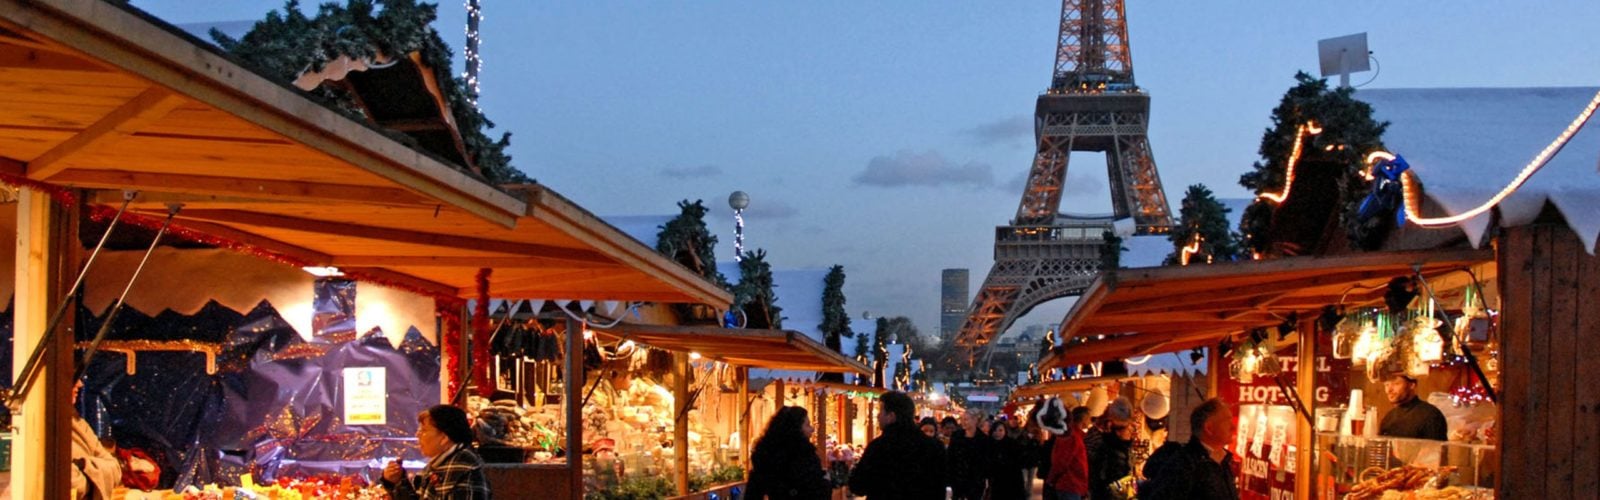 Paris Christmas Market, Champs de Mars, Eiffel Tower